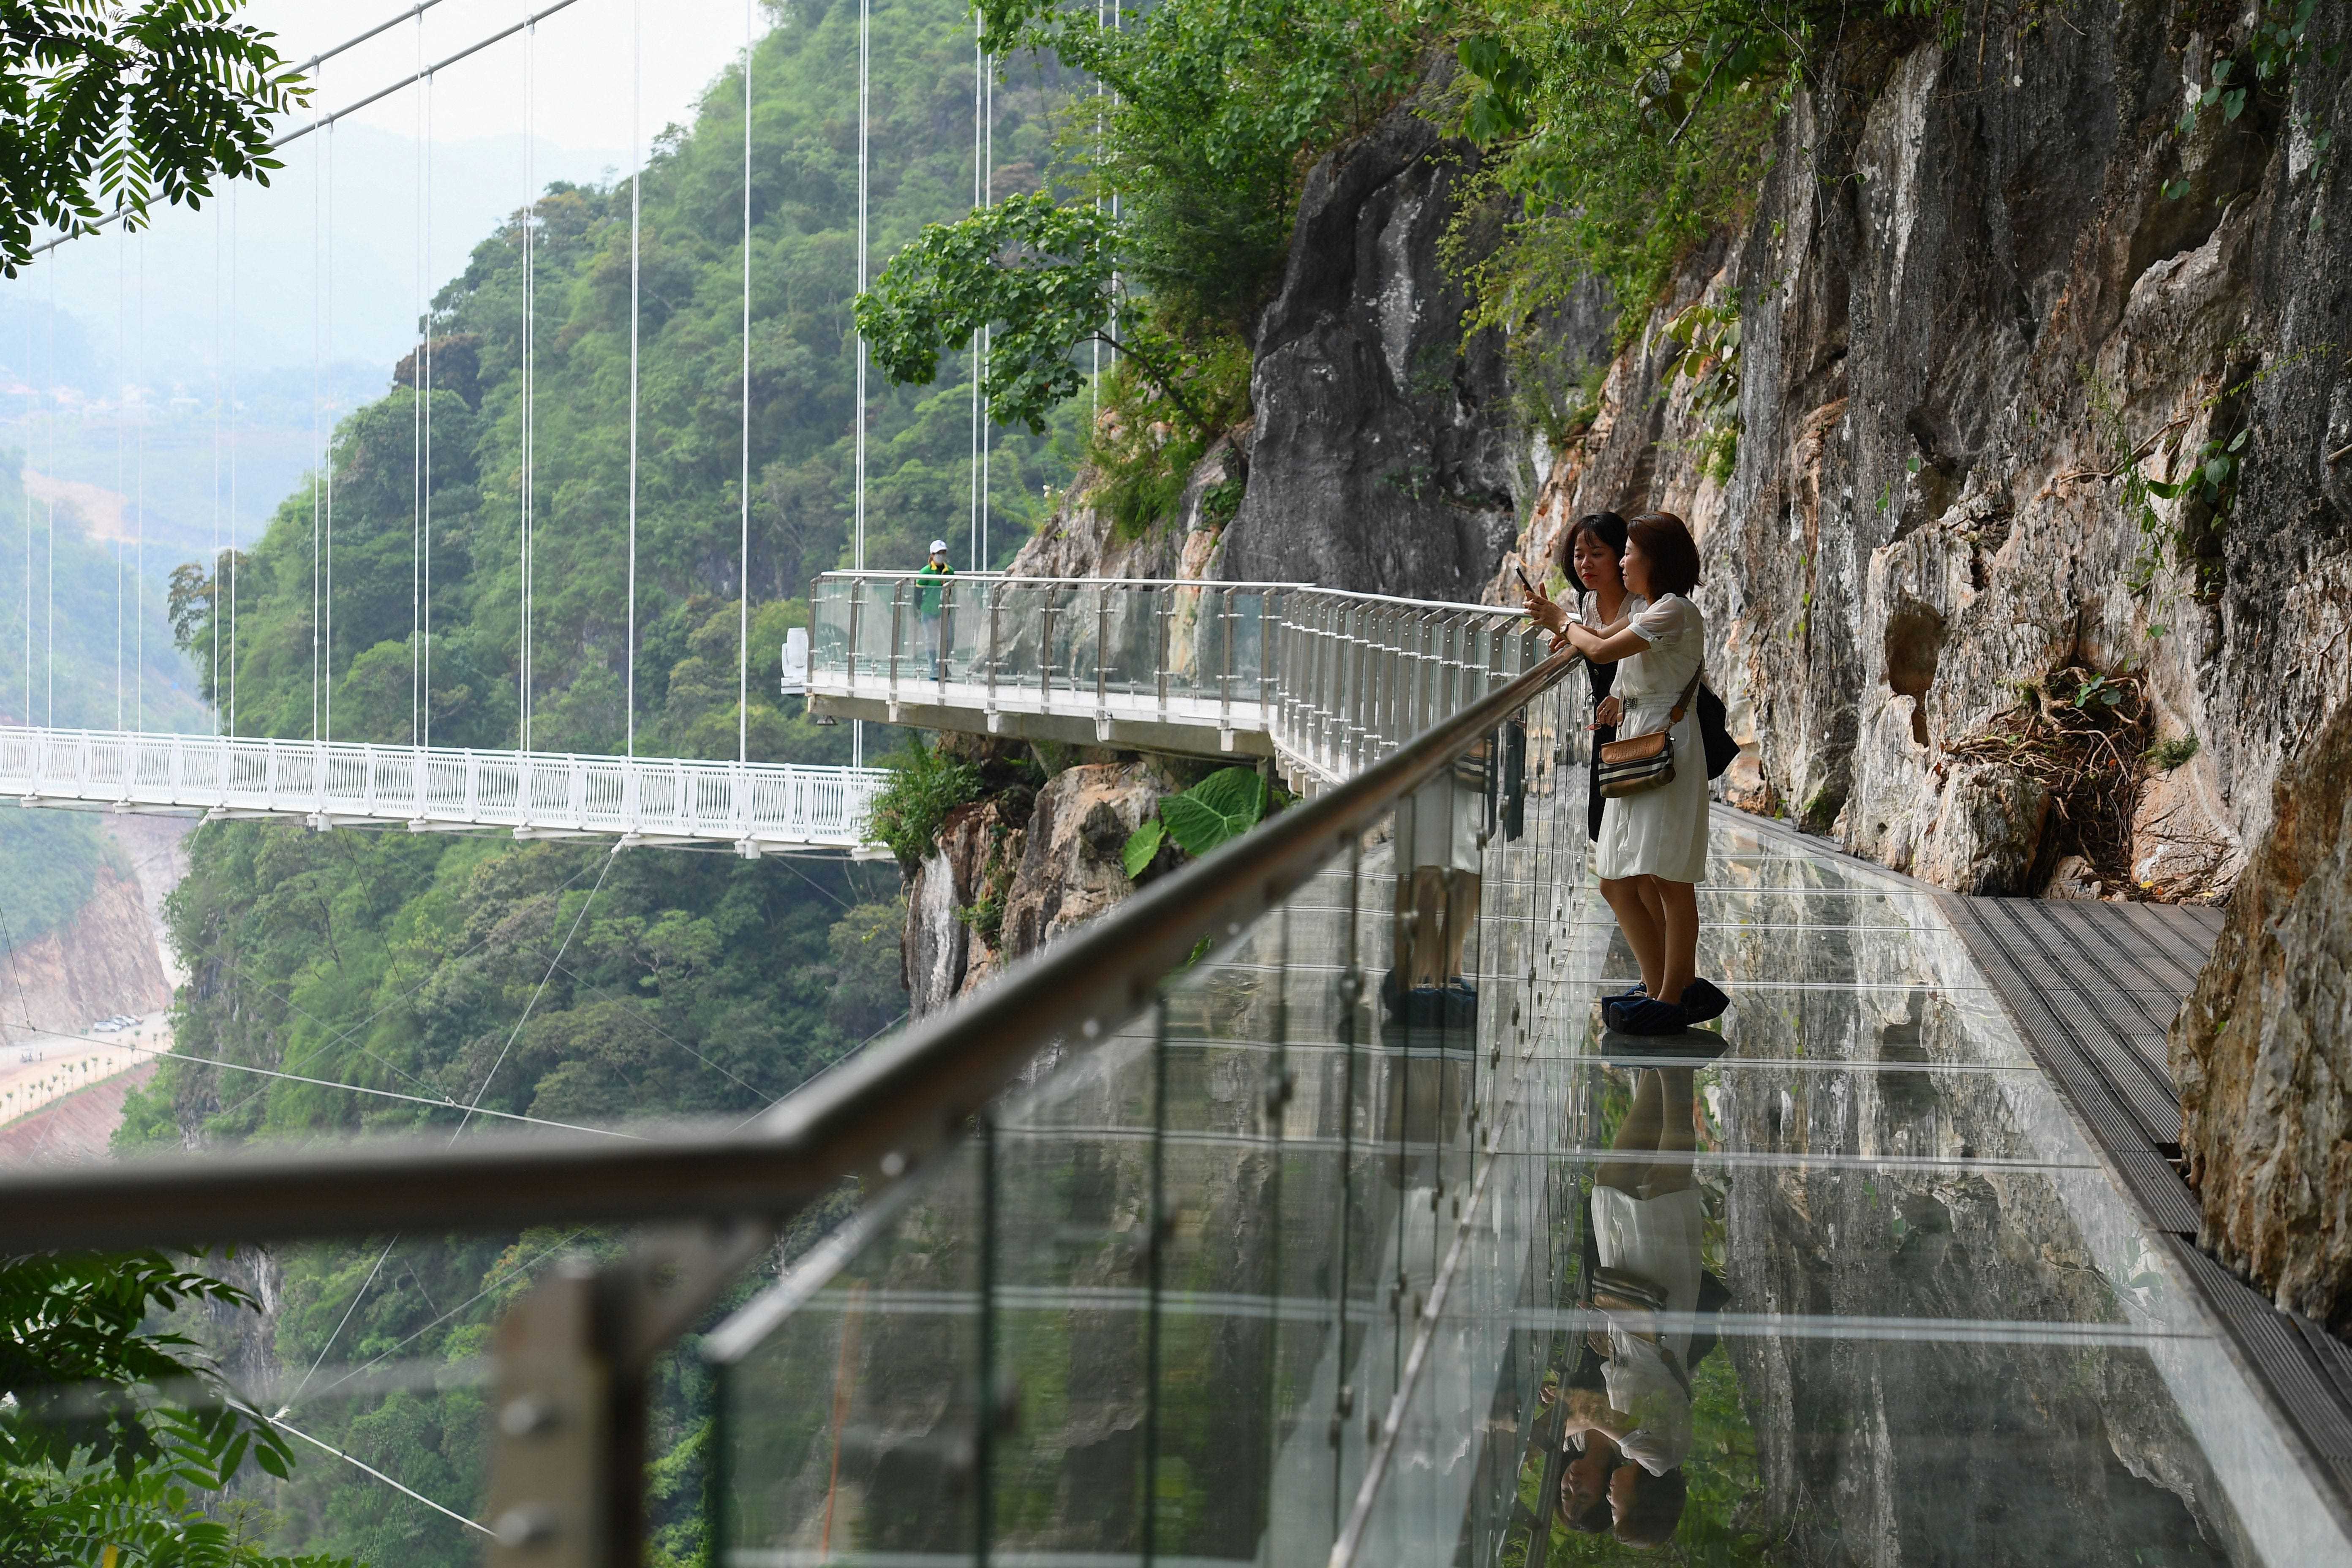 Menschen stehen auf der Glasbrücke Bach Long im Distrikt Moc Chau in der vietnamesischen Provinz Son La